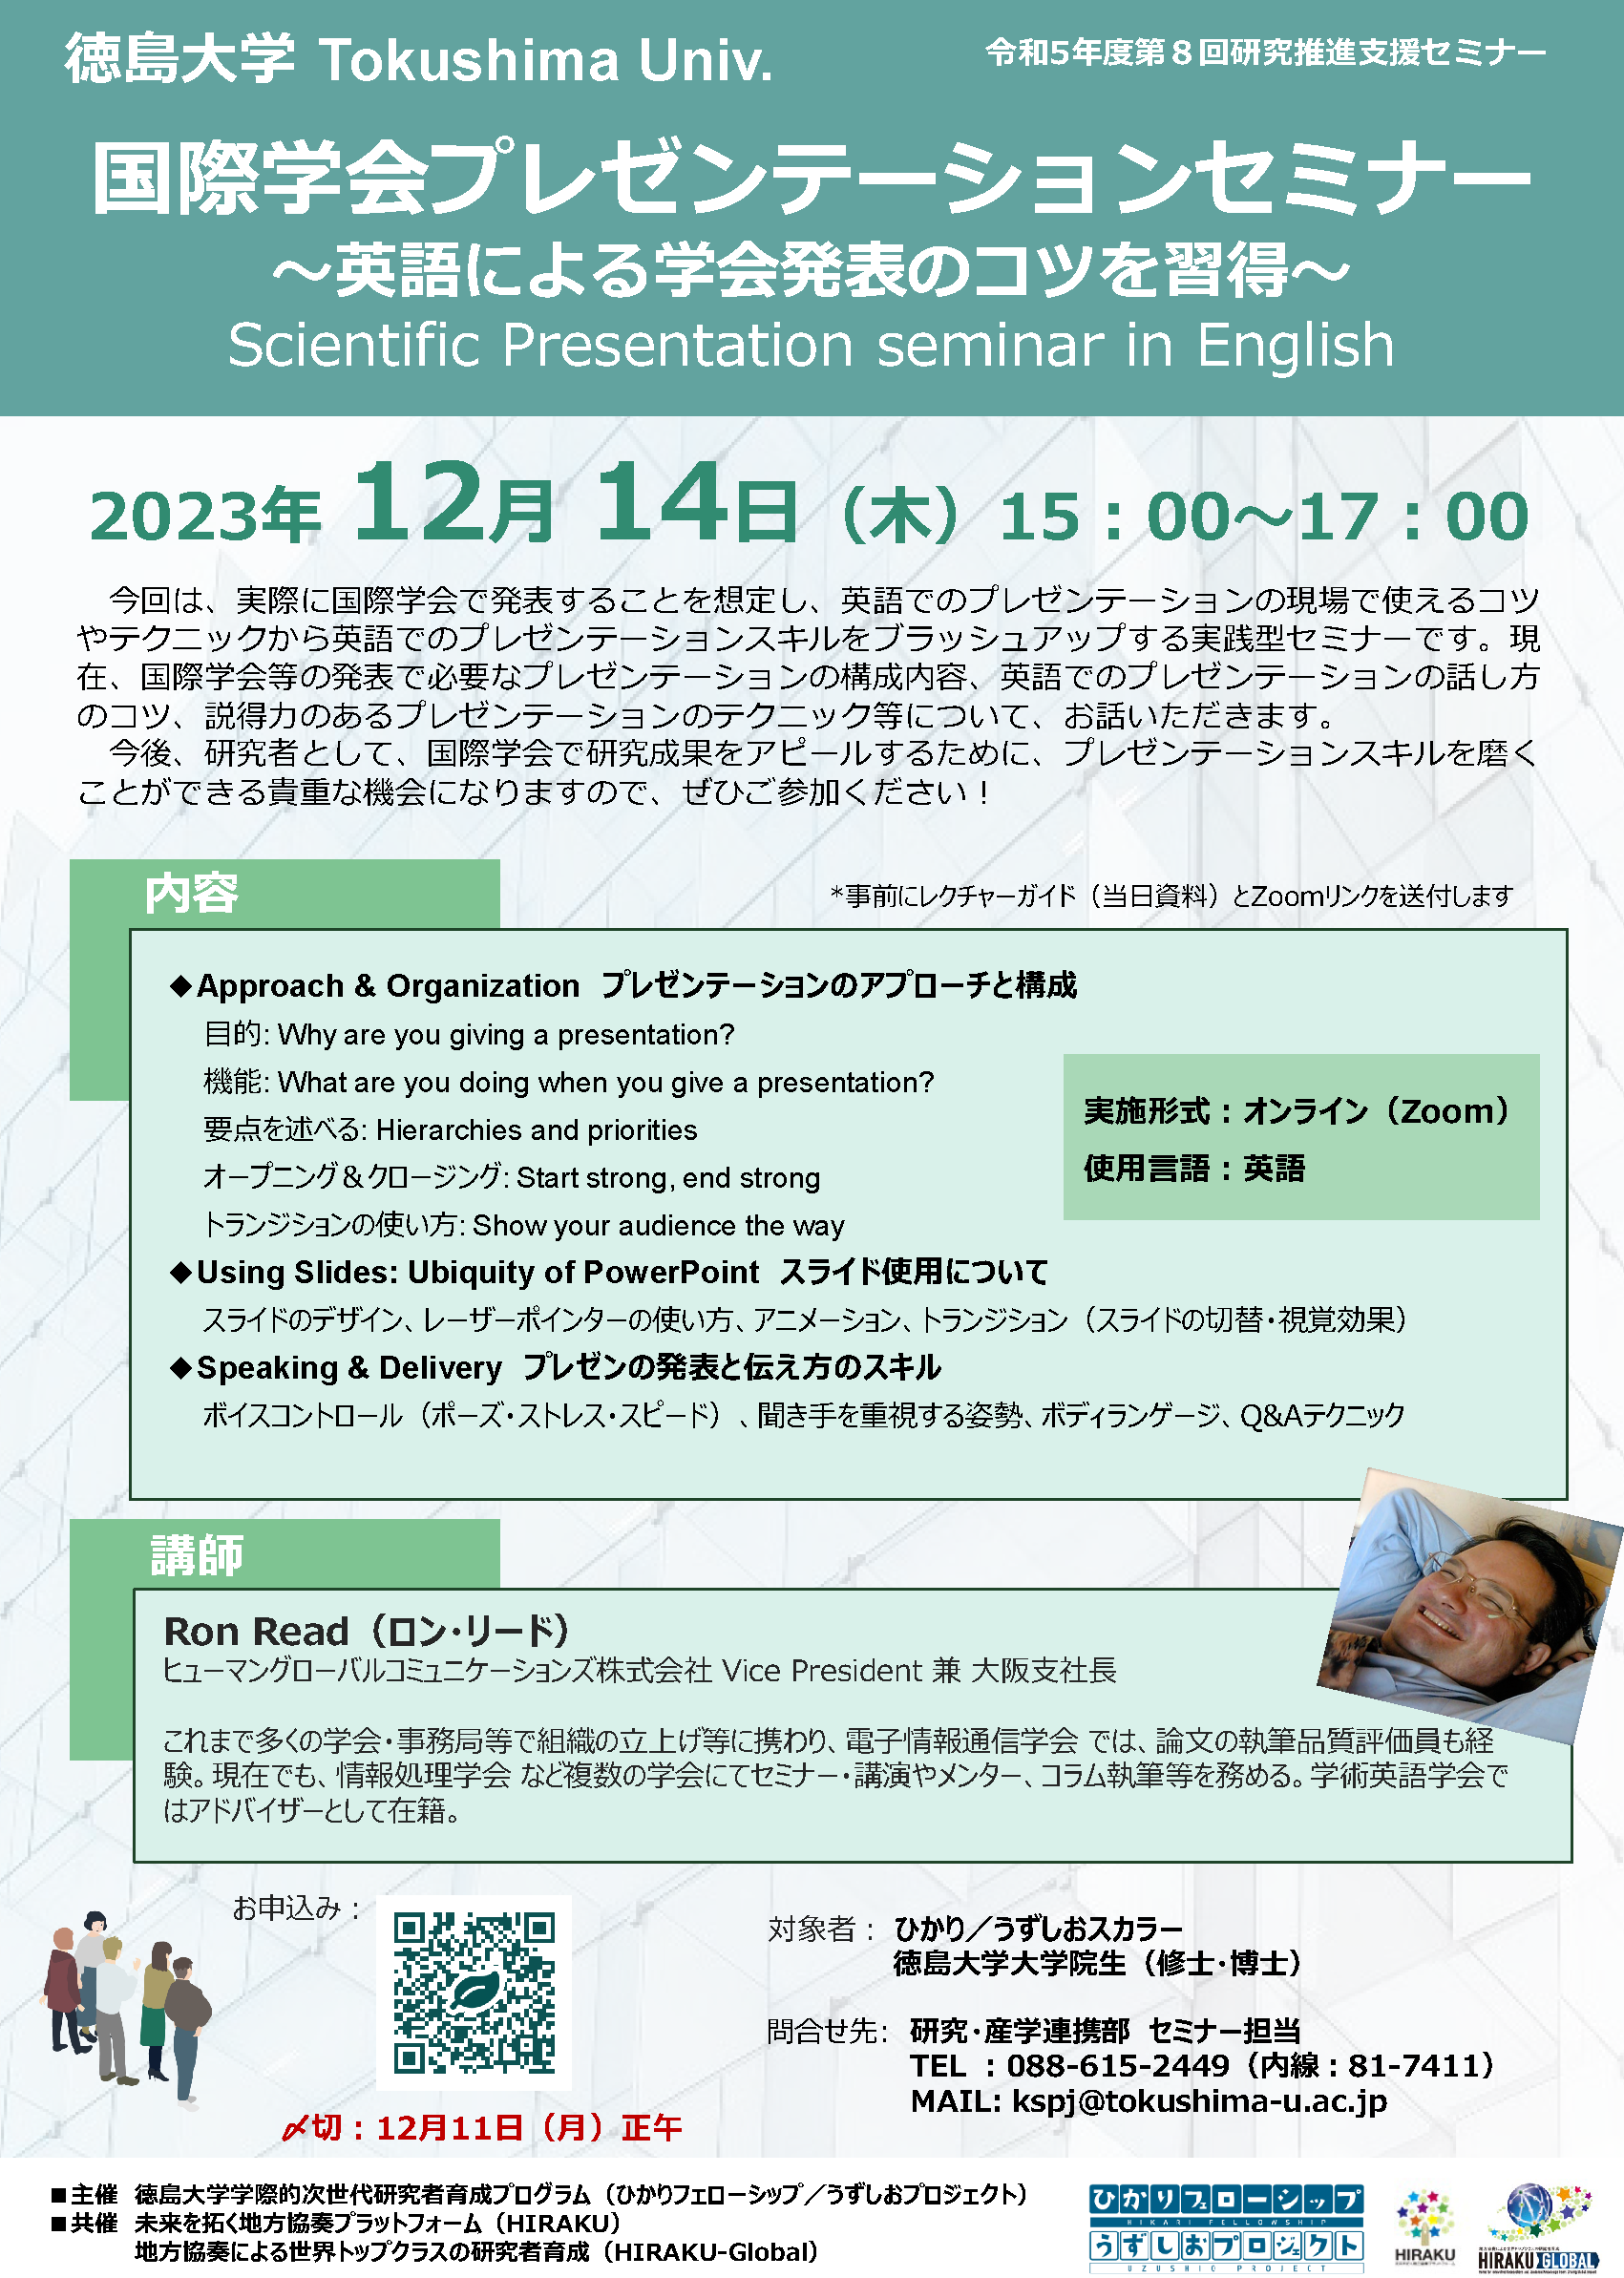 20231020 テクニカルライティング応用編Ⅲ_チラシ.png